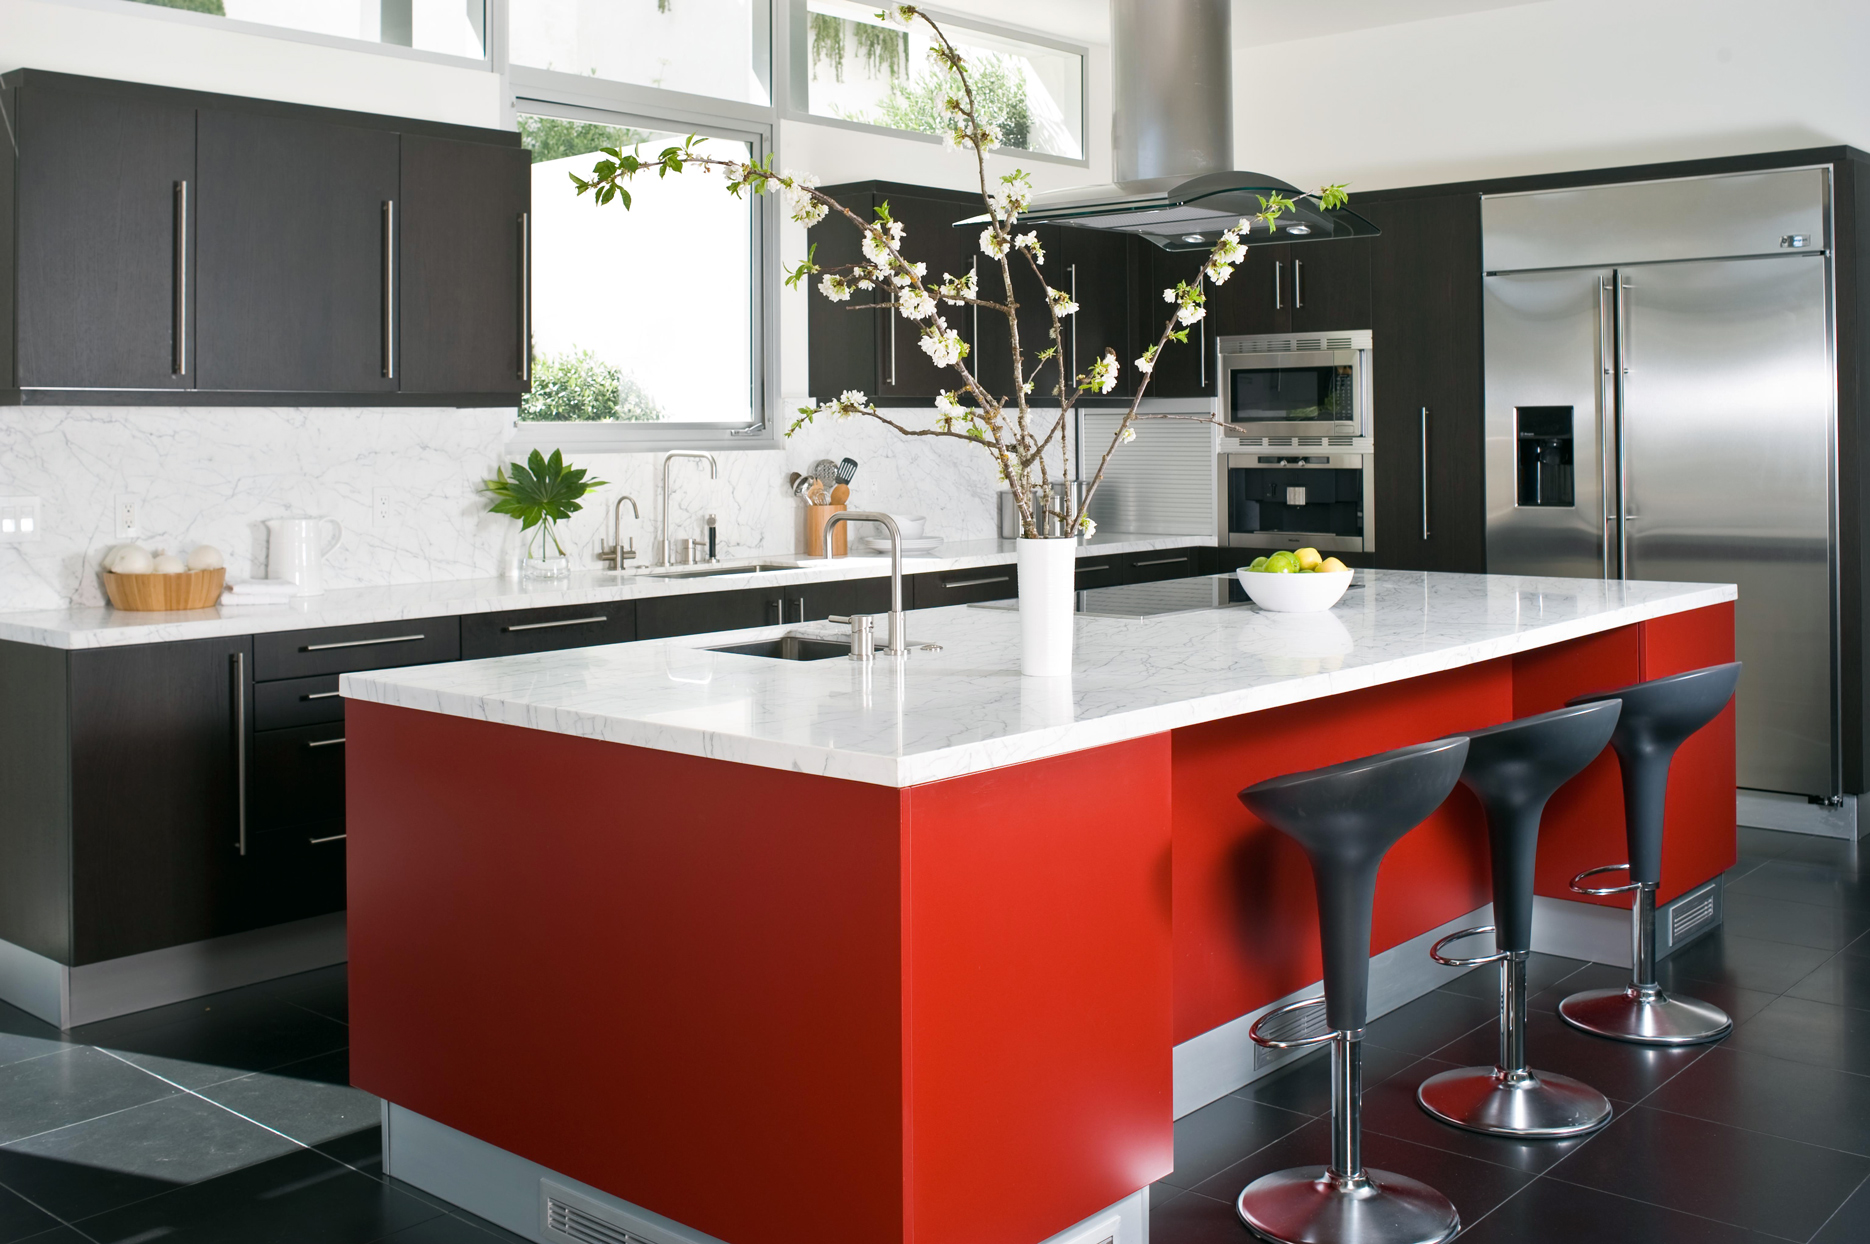 Phòng bếp này là minh chứng cho sự kết hợp hoàn hảo giữa 2 gam màu trắng - đen cổ điển và sắc đỏ nồng nàn tạo nên một không gian vừa cổ điển vừa hiện đại. Toàn bộ tủ bếp sử dụng màu đen, mặt bàn và backsplash ốp đá cẩm thạch trắng. Duy nhất đảo bếp có gam màu đỏ nhưng lại trở thành trung tâm của sự chú ý hơn cả.